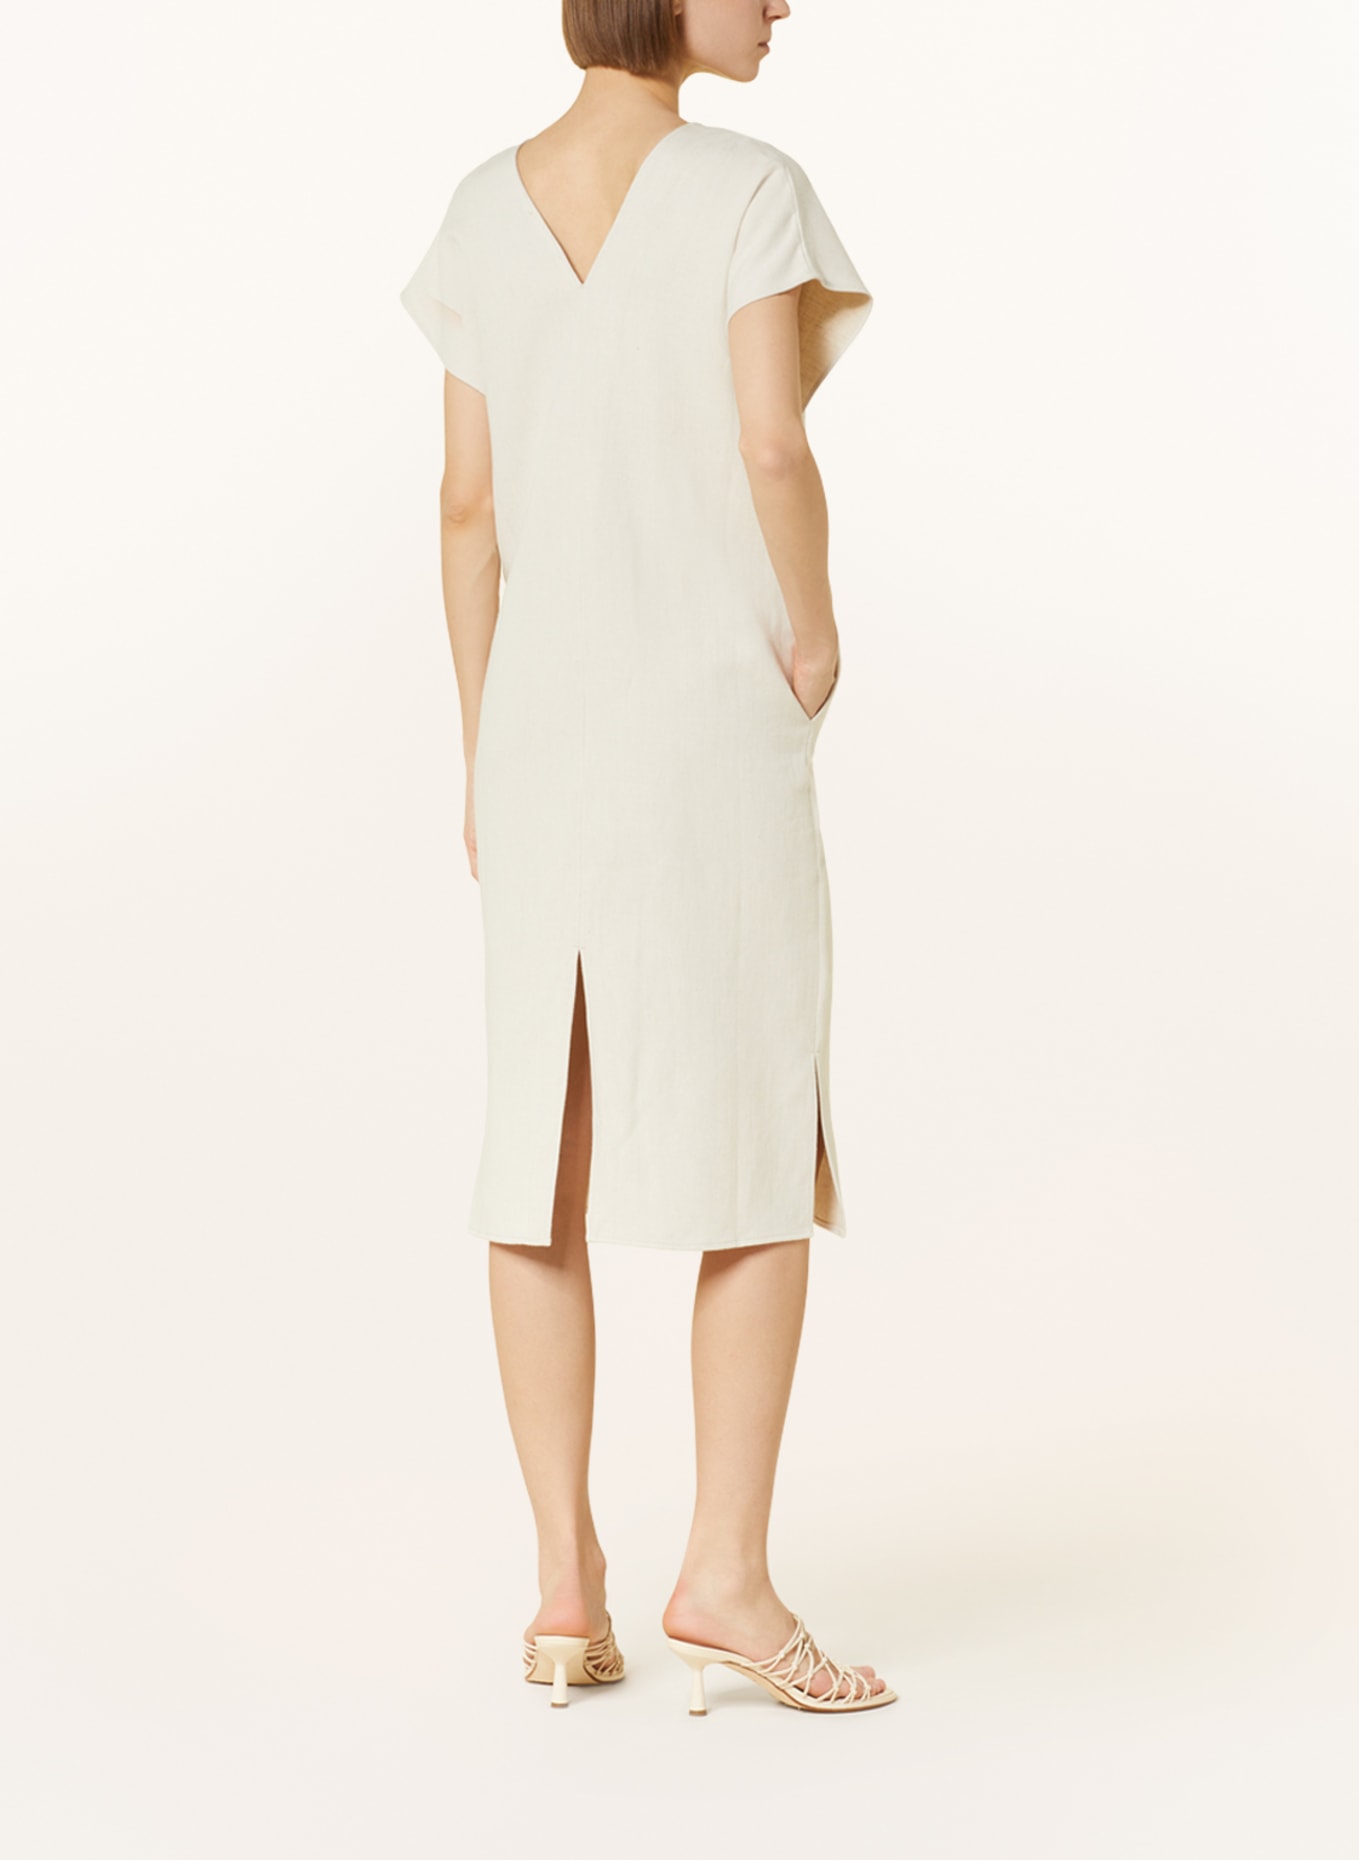 GITTA BANKO Kleid LUNA mit Leinen, Farbe: CREME (Bild 3)